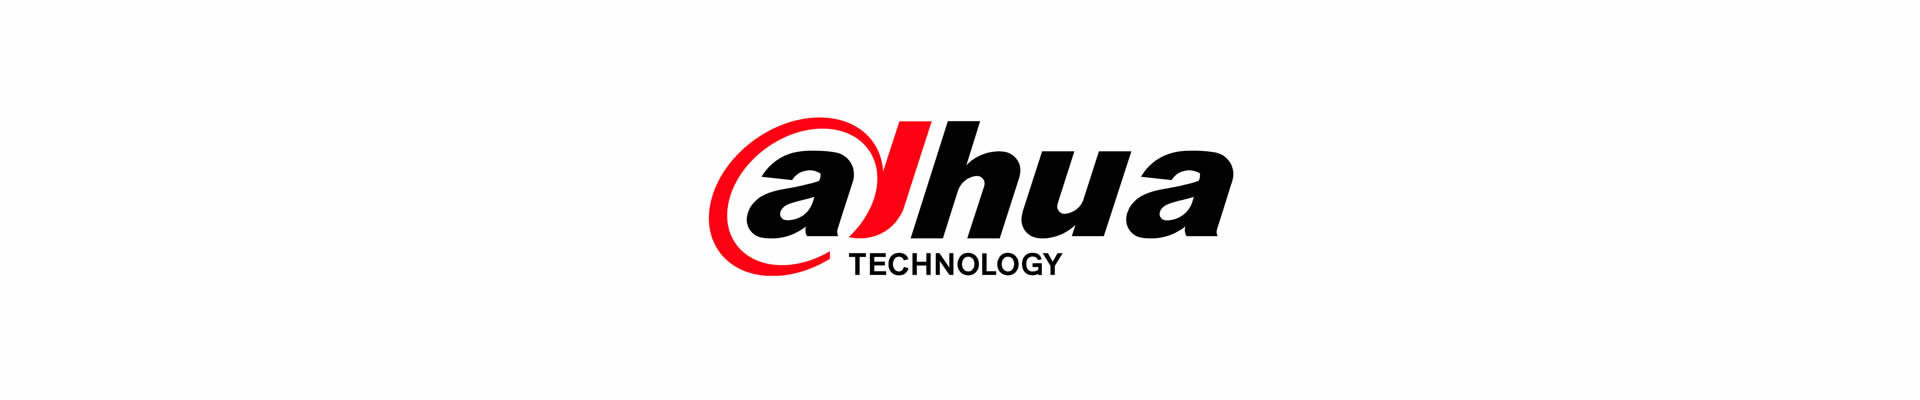 DAHUA_Logo